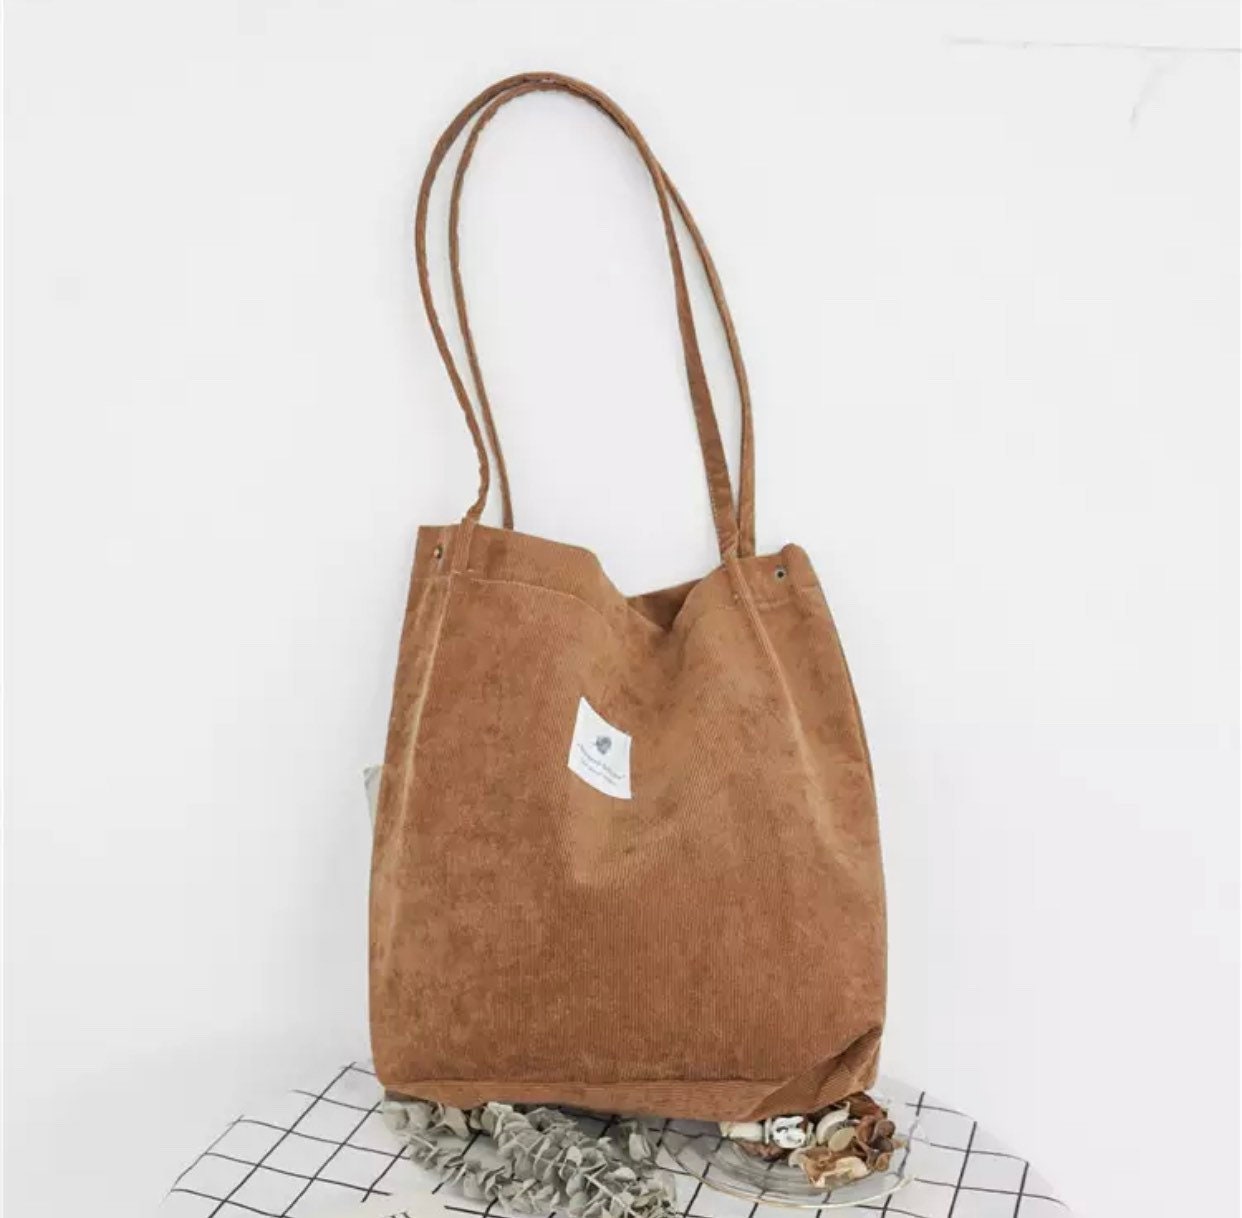 Corduroy tote bag shopping bag eco friendly | Etsy